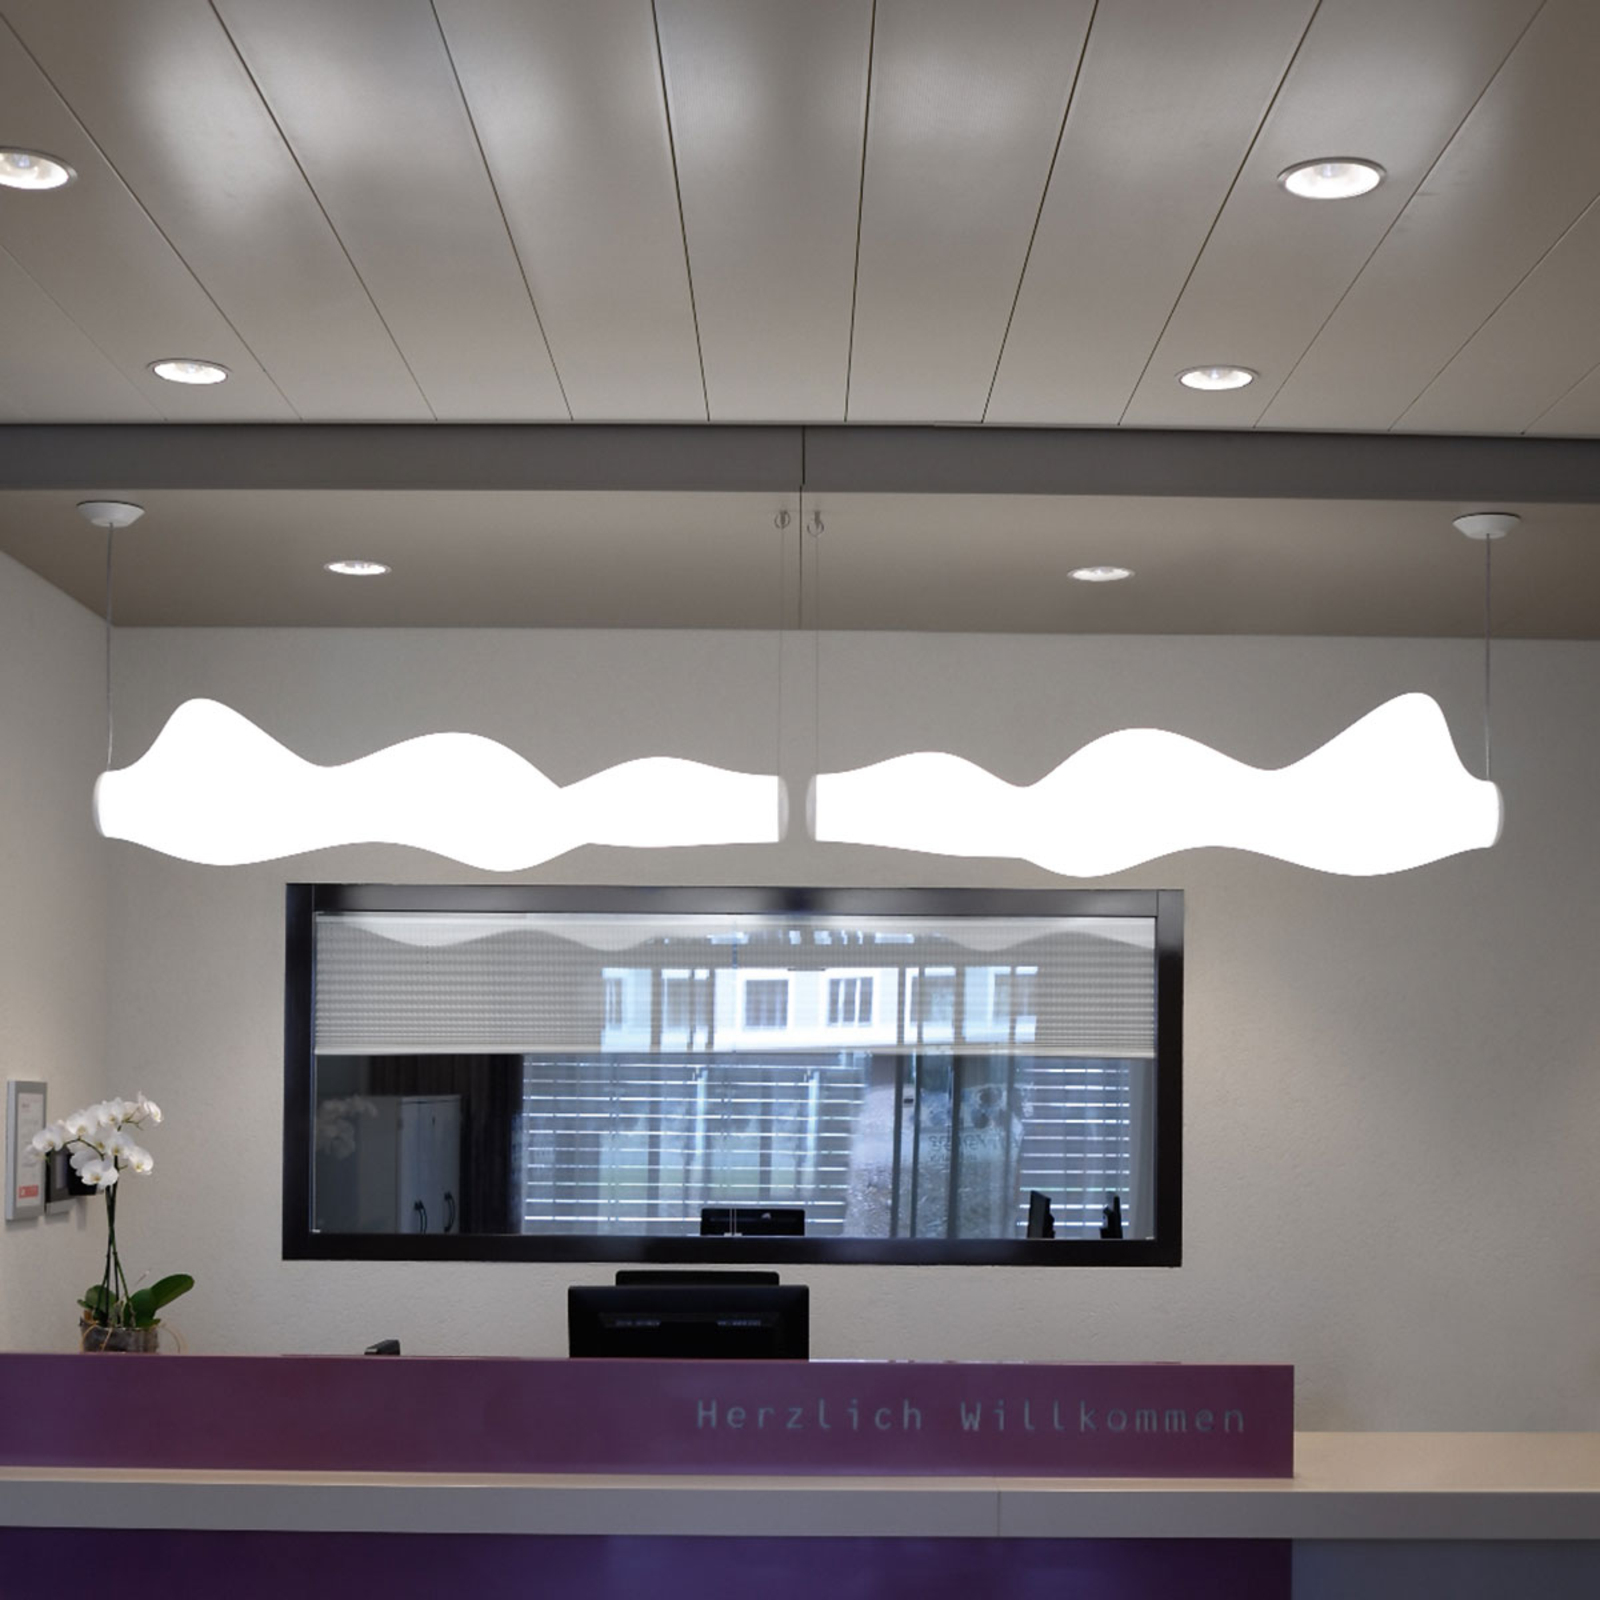 Centro XL - efektivní LED zapuštěné světlo, bílé